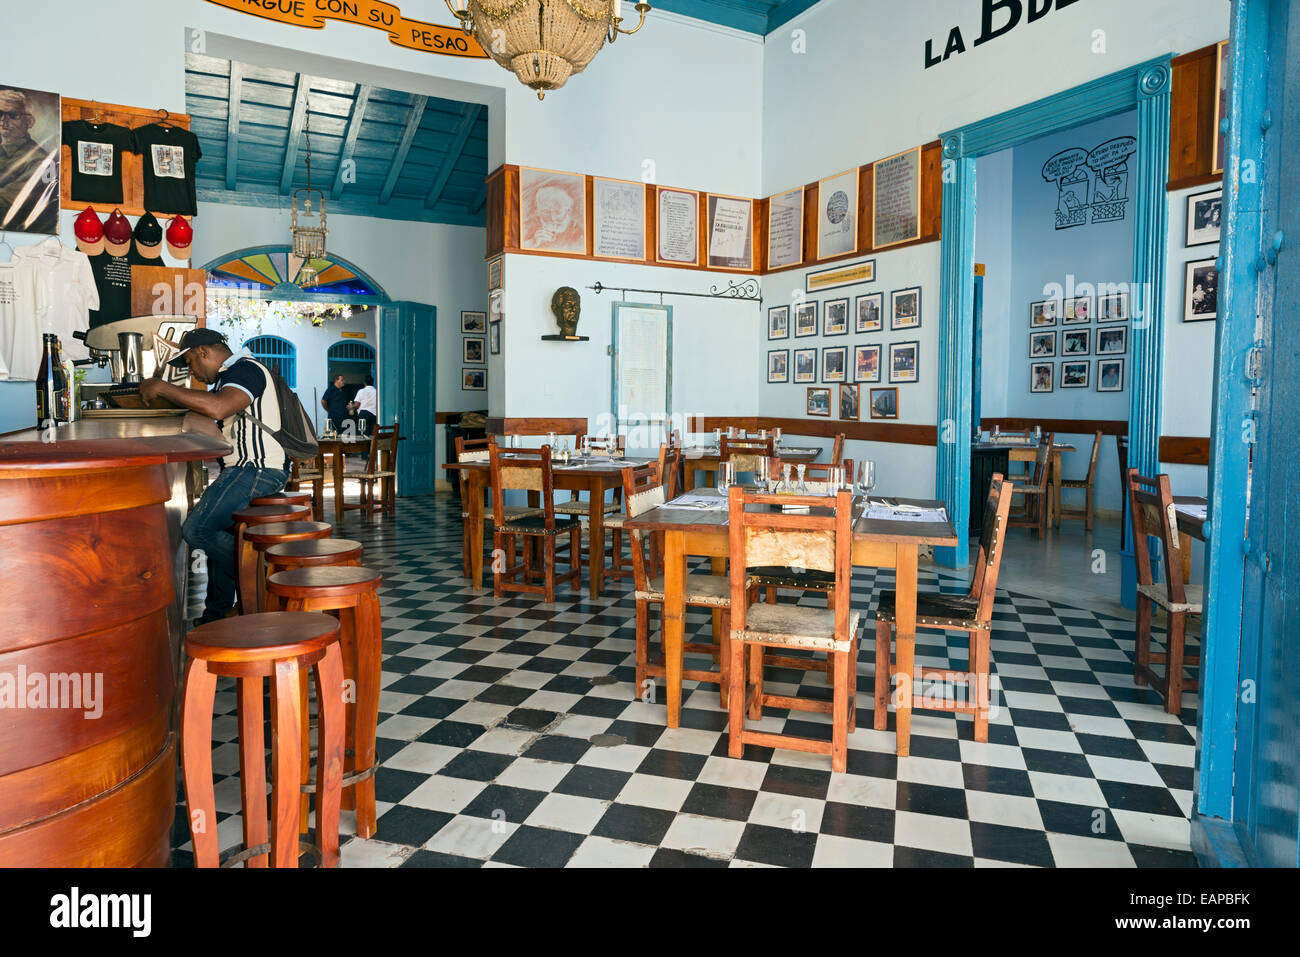 TRINIDAD, Kuba - 8. Mai 2014: Eine neue Version von La Bodeguita del Medio, Kuba berühmteste Restaurant-Bar in der Stadt von Trinidad Stockfoto